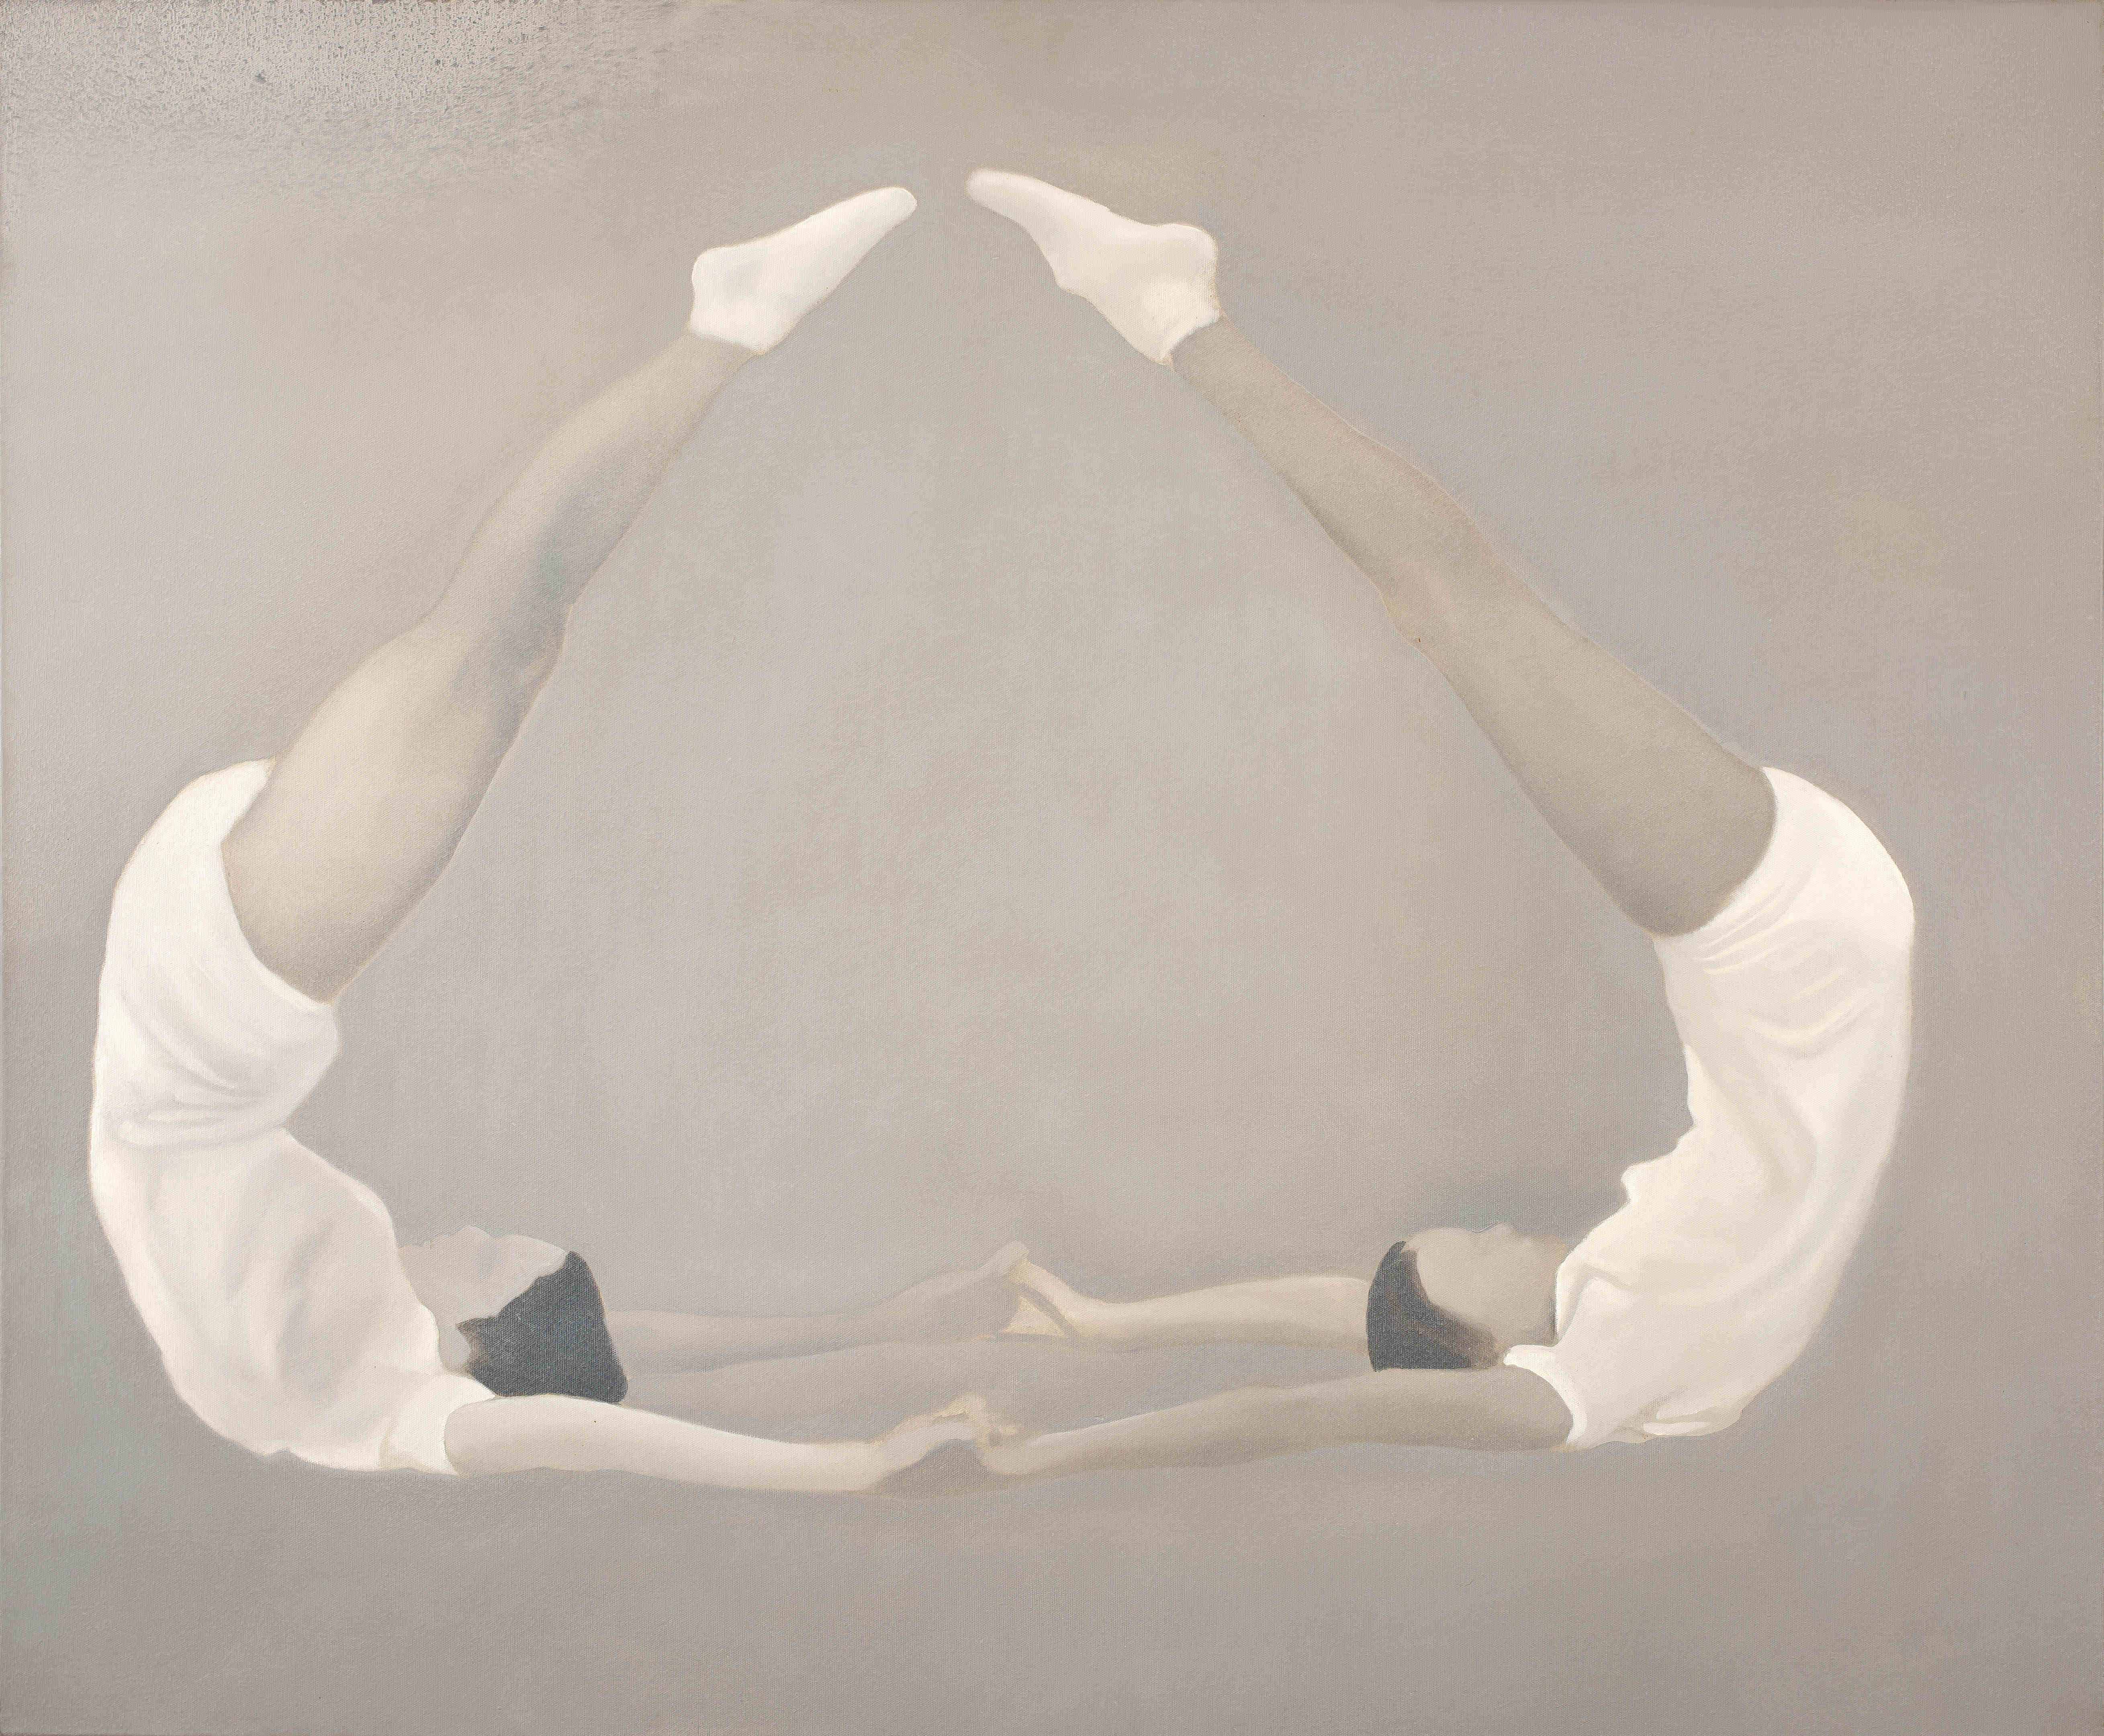 Mark Hipper; Leg Positions, triptych